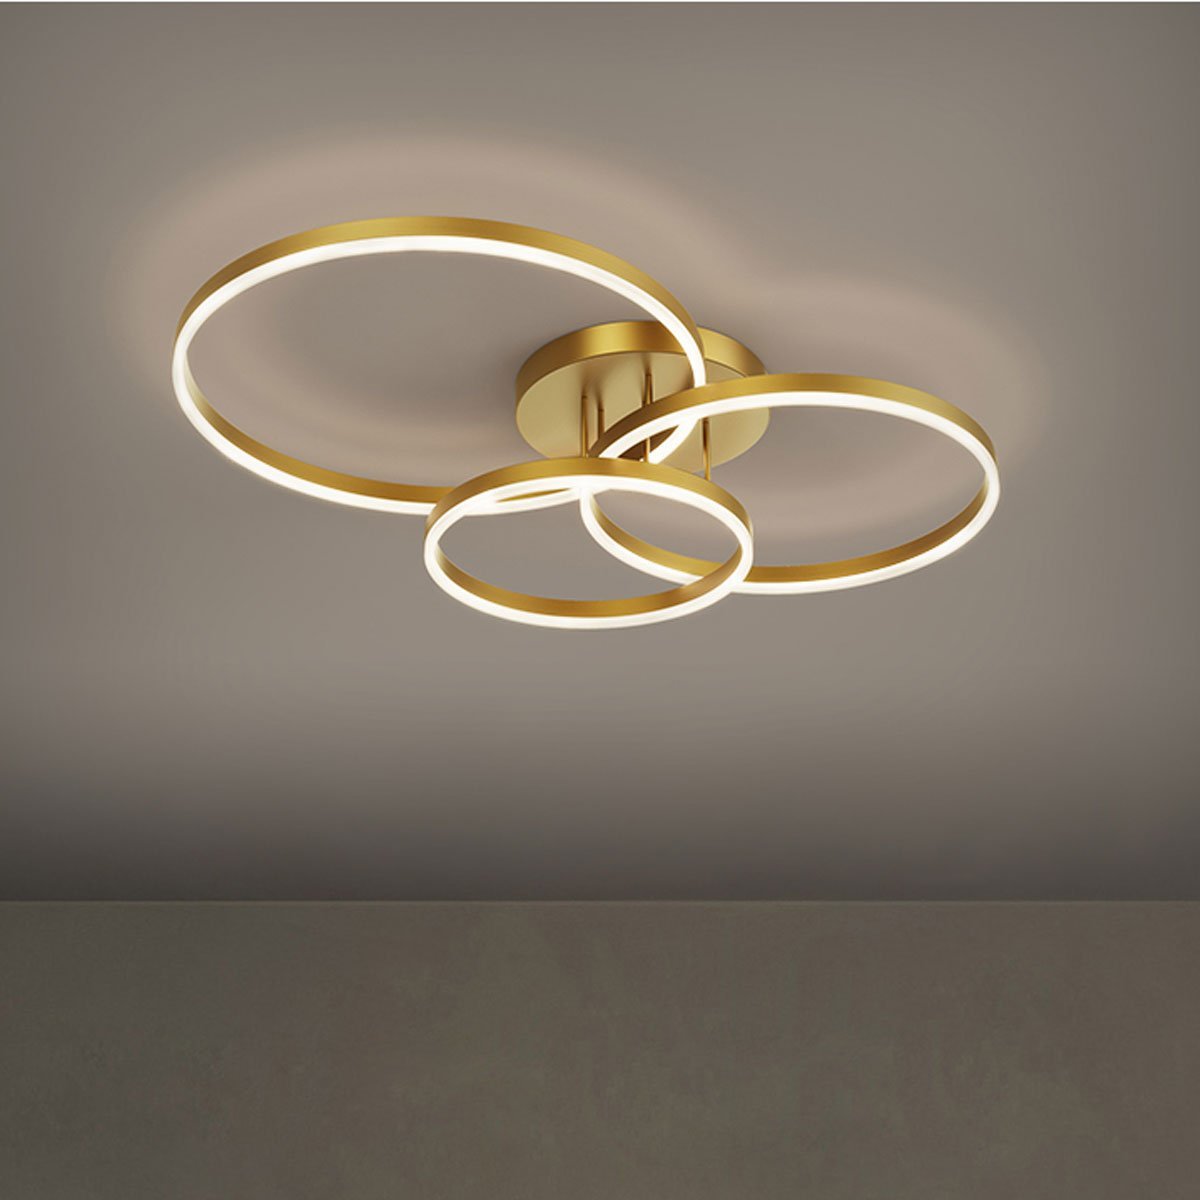 Lustre Aneis Infinito 3 em 1 Perfil Luminaria Orbital Arco Luxo Moderno Decorativo Sala Quarto Comer - 3